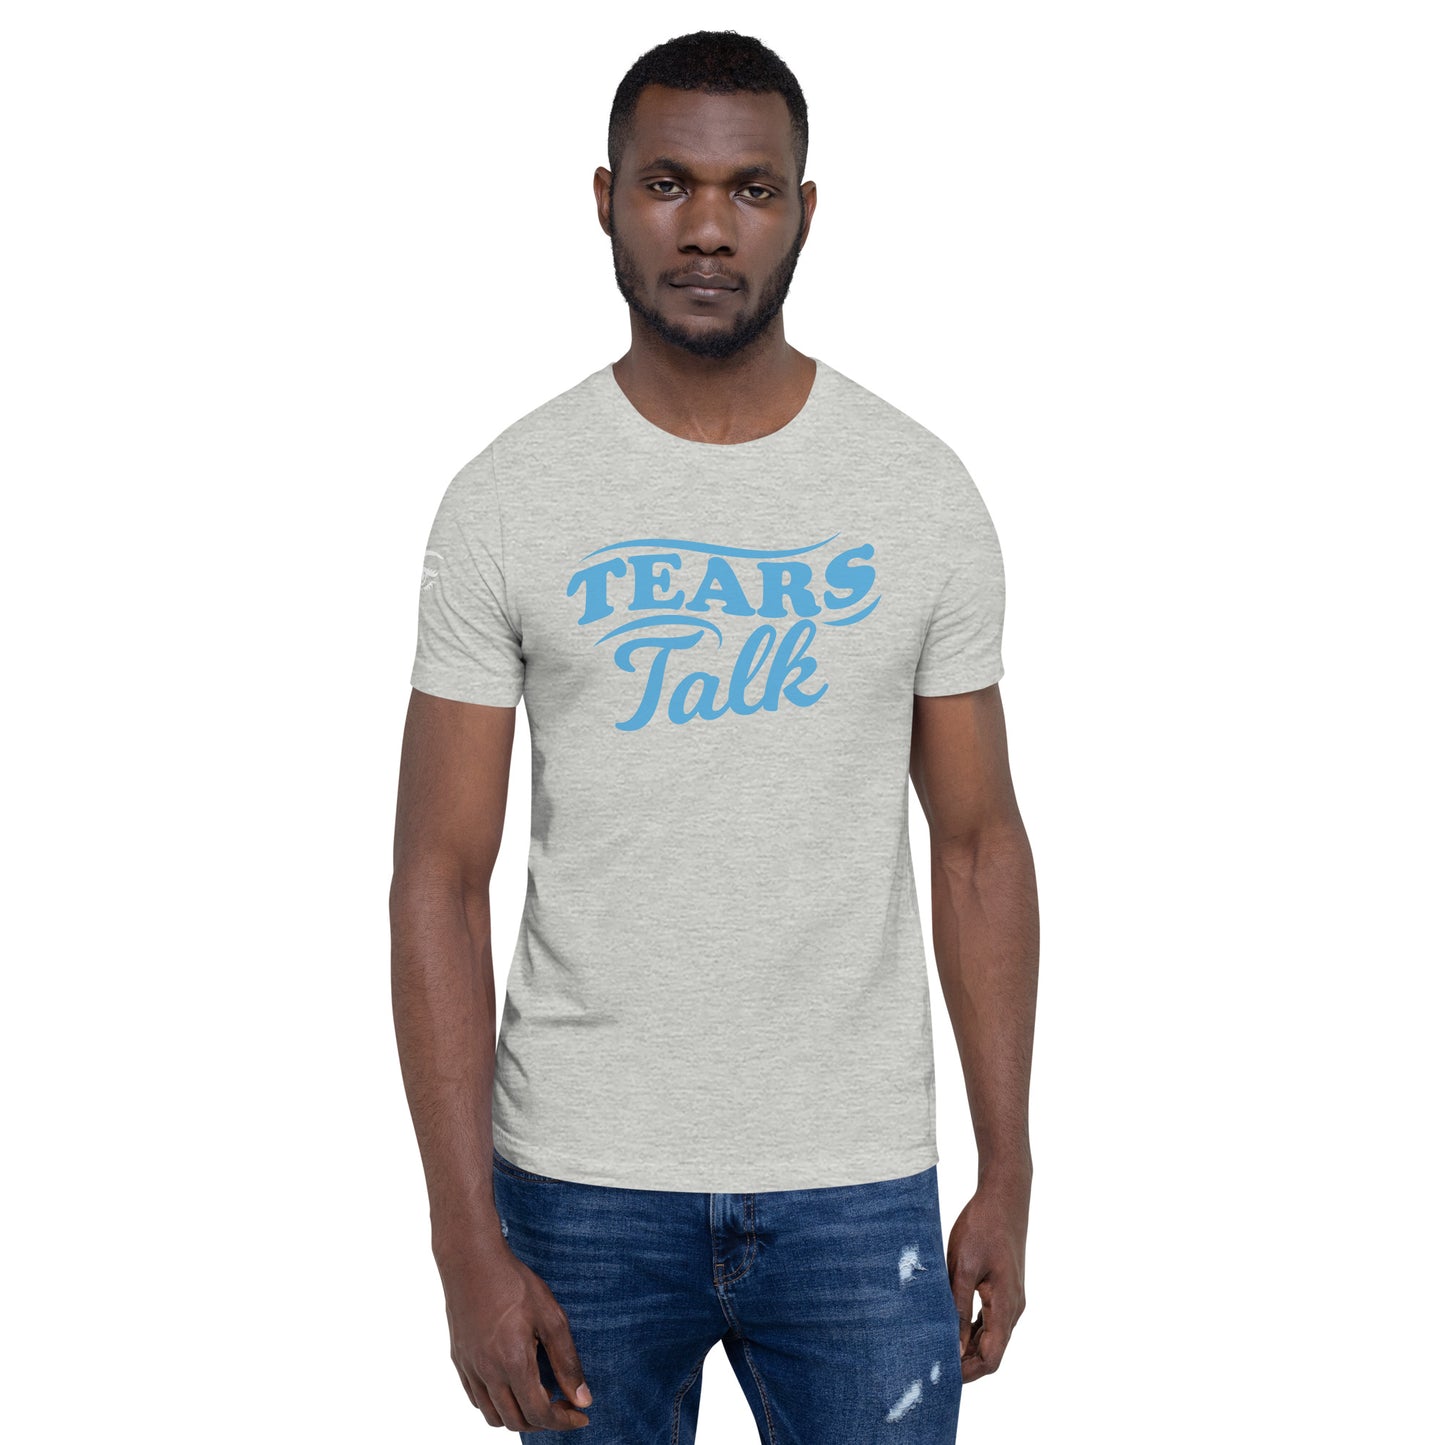 Tears Talk t-shirt